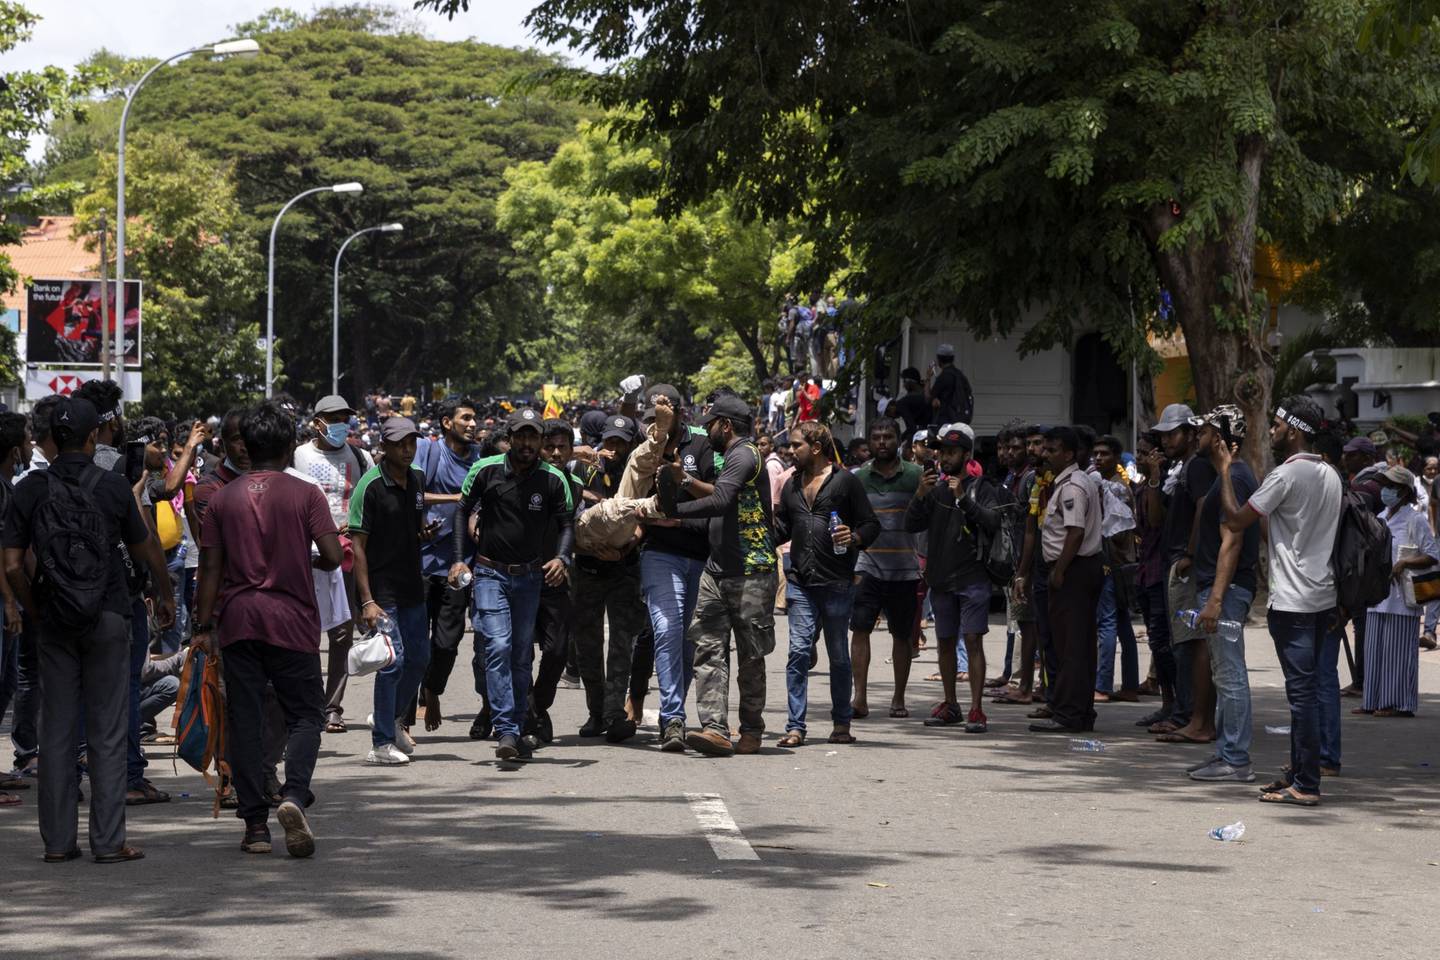 Manifestantes antigubernamentales cargan con un manifestante herido tras el uso de gas lacrimógeno frente a la oficina del primer ministro en Colombo, Sri Lanka, el miércoles 13 de julio de 2022. El estado de emergencia fue impuesto por el presidente en funciones, el primer ministro Ranil Wickremesinghe, mientras la policía se enfrenta a los manifestantes después de que el presidente Rajapaksa haya huido de la nación insular. El vacío de liderazgo puede retrasar las conversaciones de rescate con el FMI. Fotógrafo: Buddhika Weerasinghe/Bloomberg

dfd